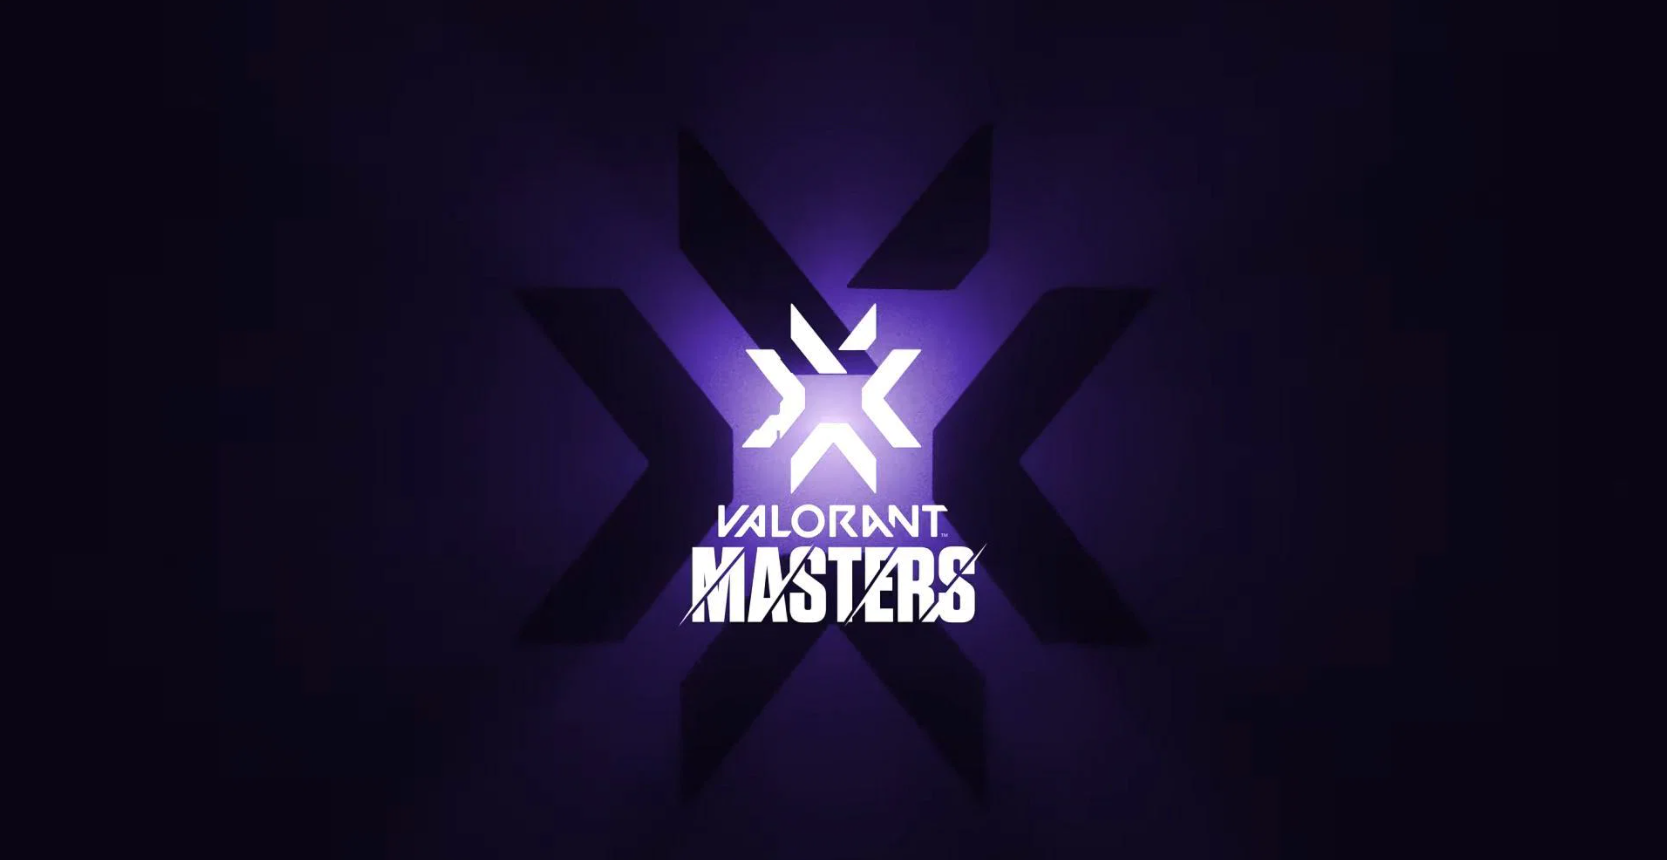 Организаторы VCT 2022: Stage 1 Masters объявили формат LAN-турнира